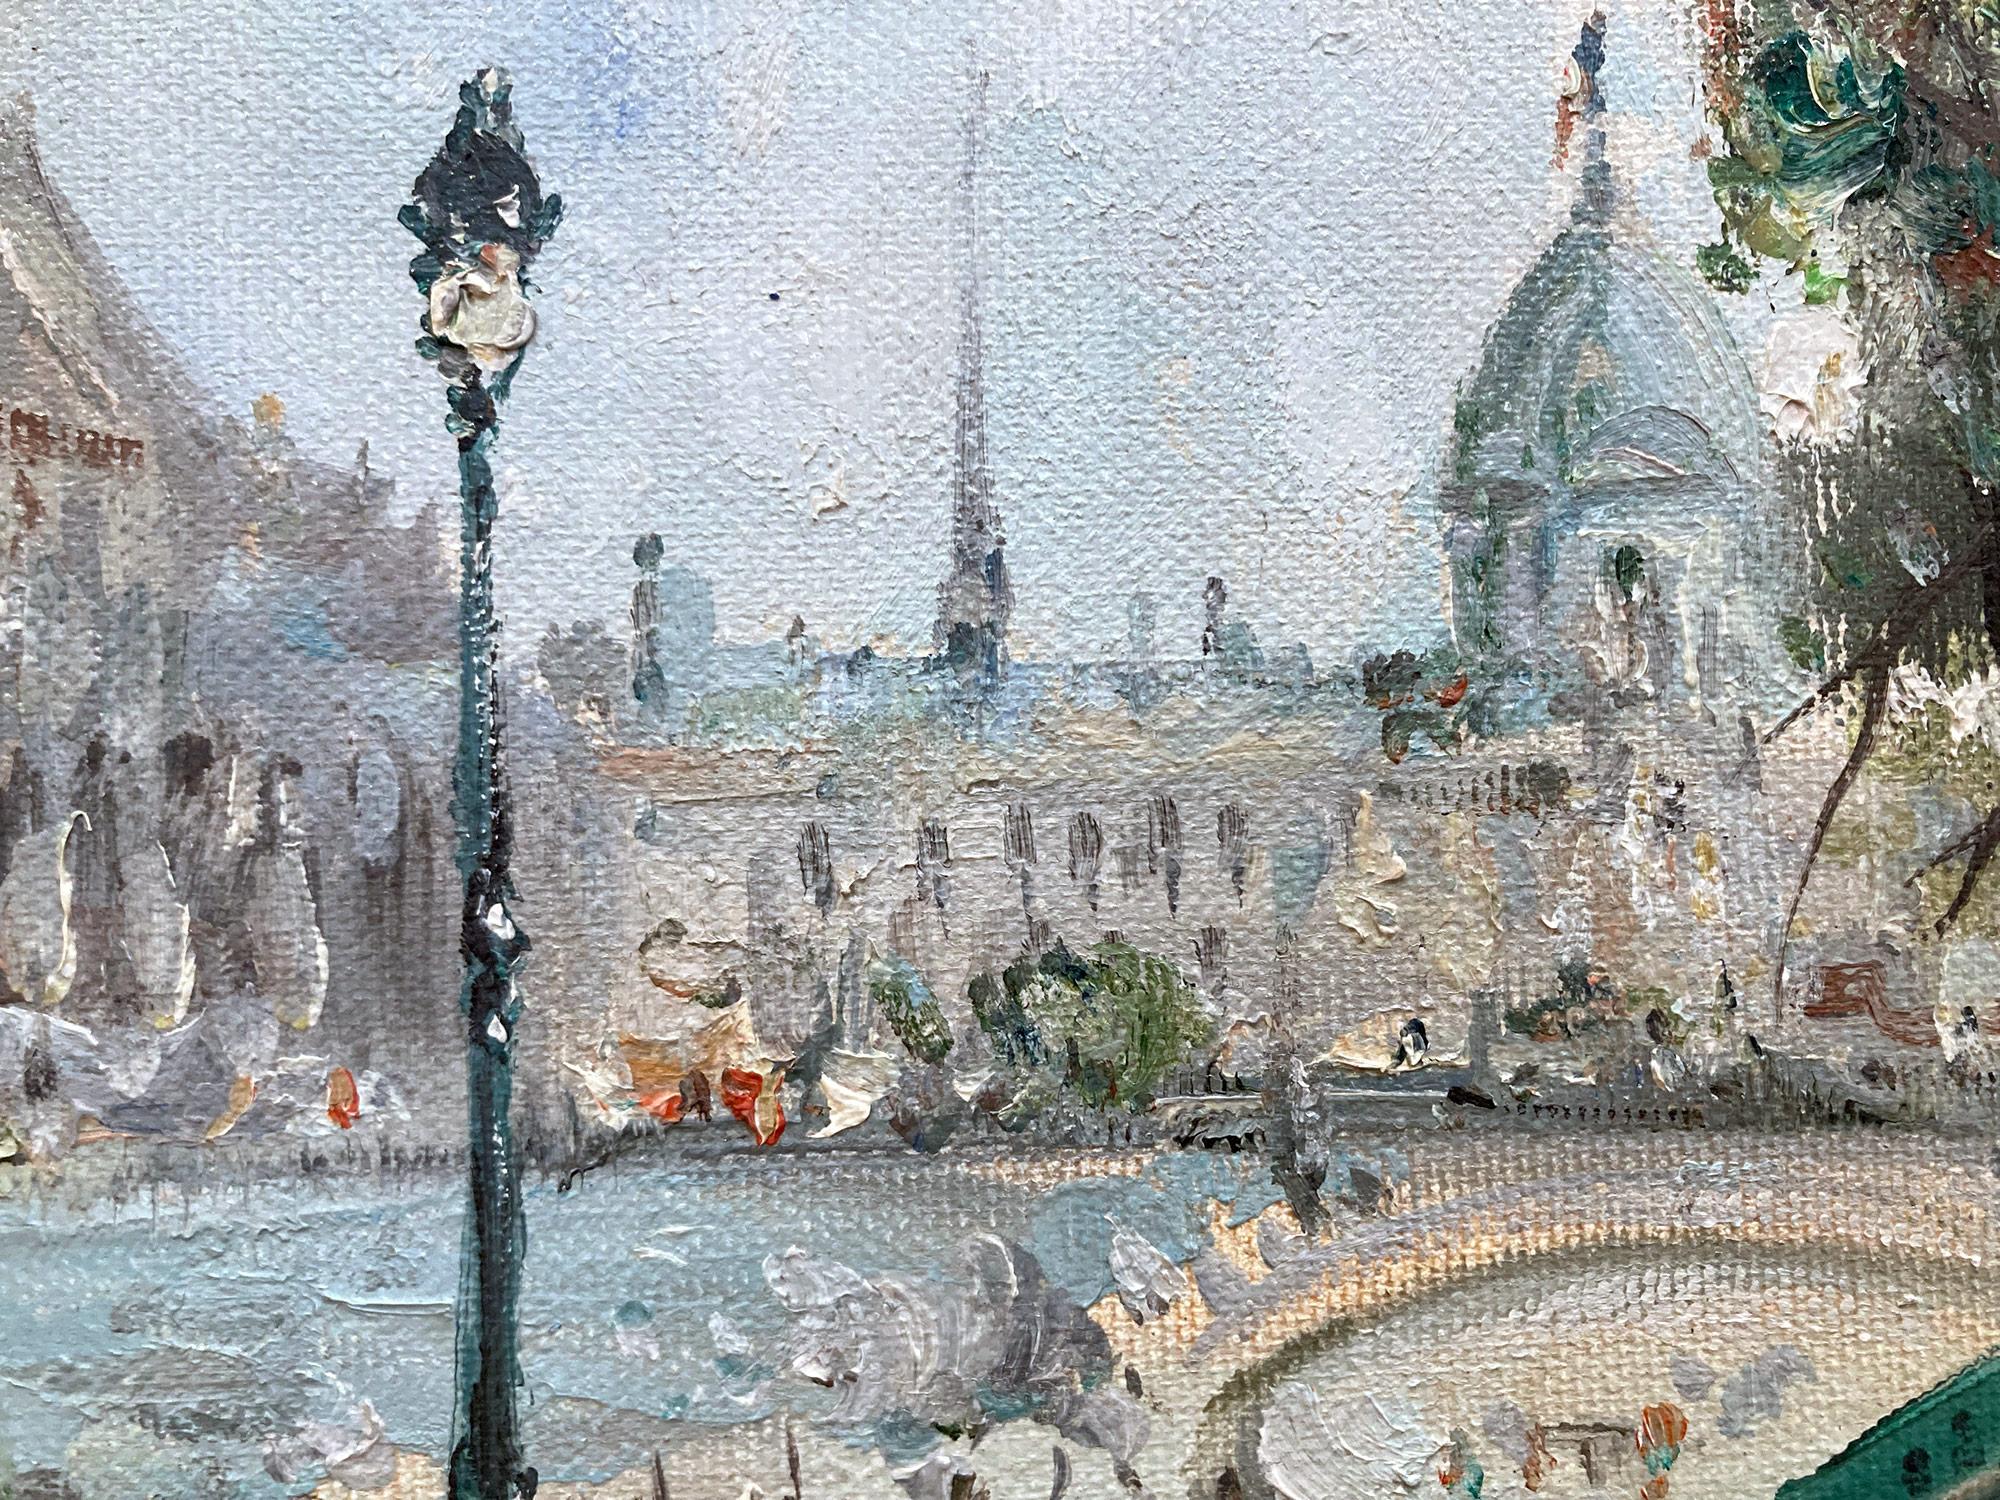 Eine außergewöhnliche impressionistische Darstellung eines Nachmittags an der Seine in Paris von Mario Passoni, an einem Frühlingstag mit dem geschäftigen Treiben der Spaziergänger und der Figuren, die sich über die Seite lehnen, um einen Blick auf